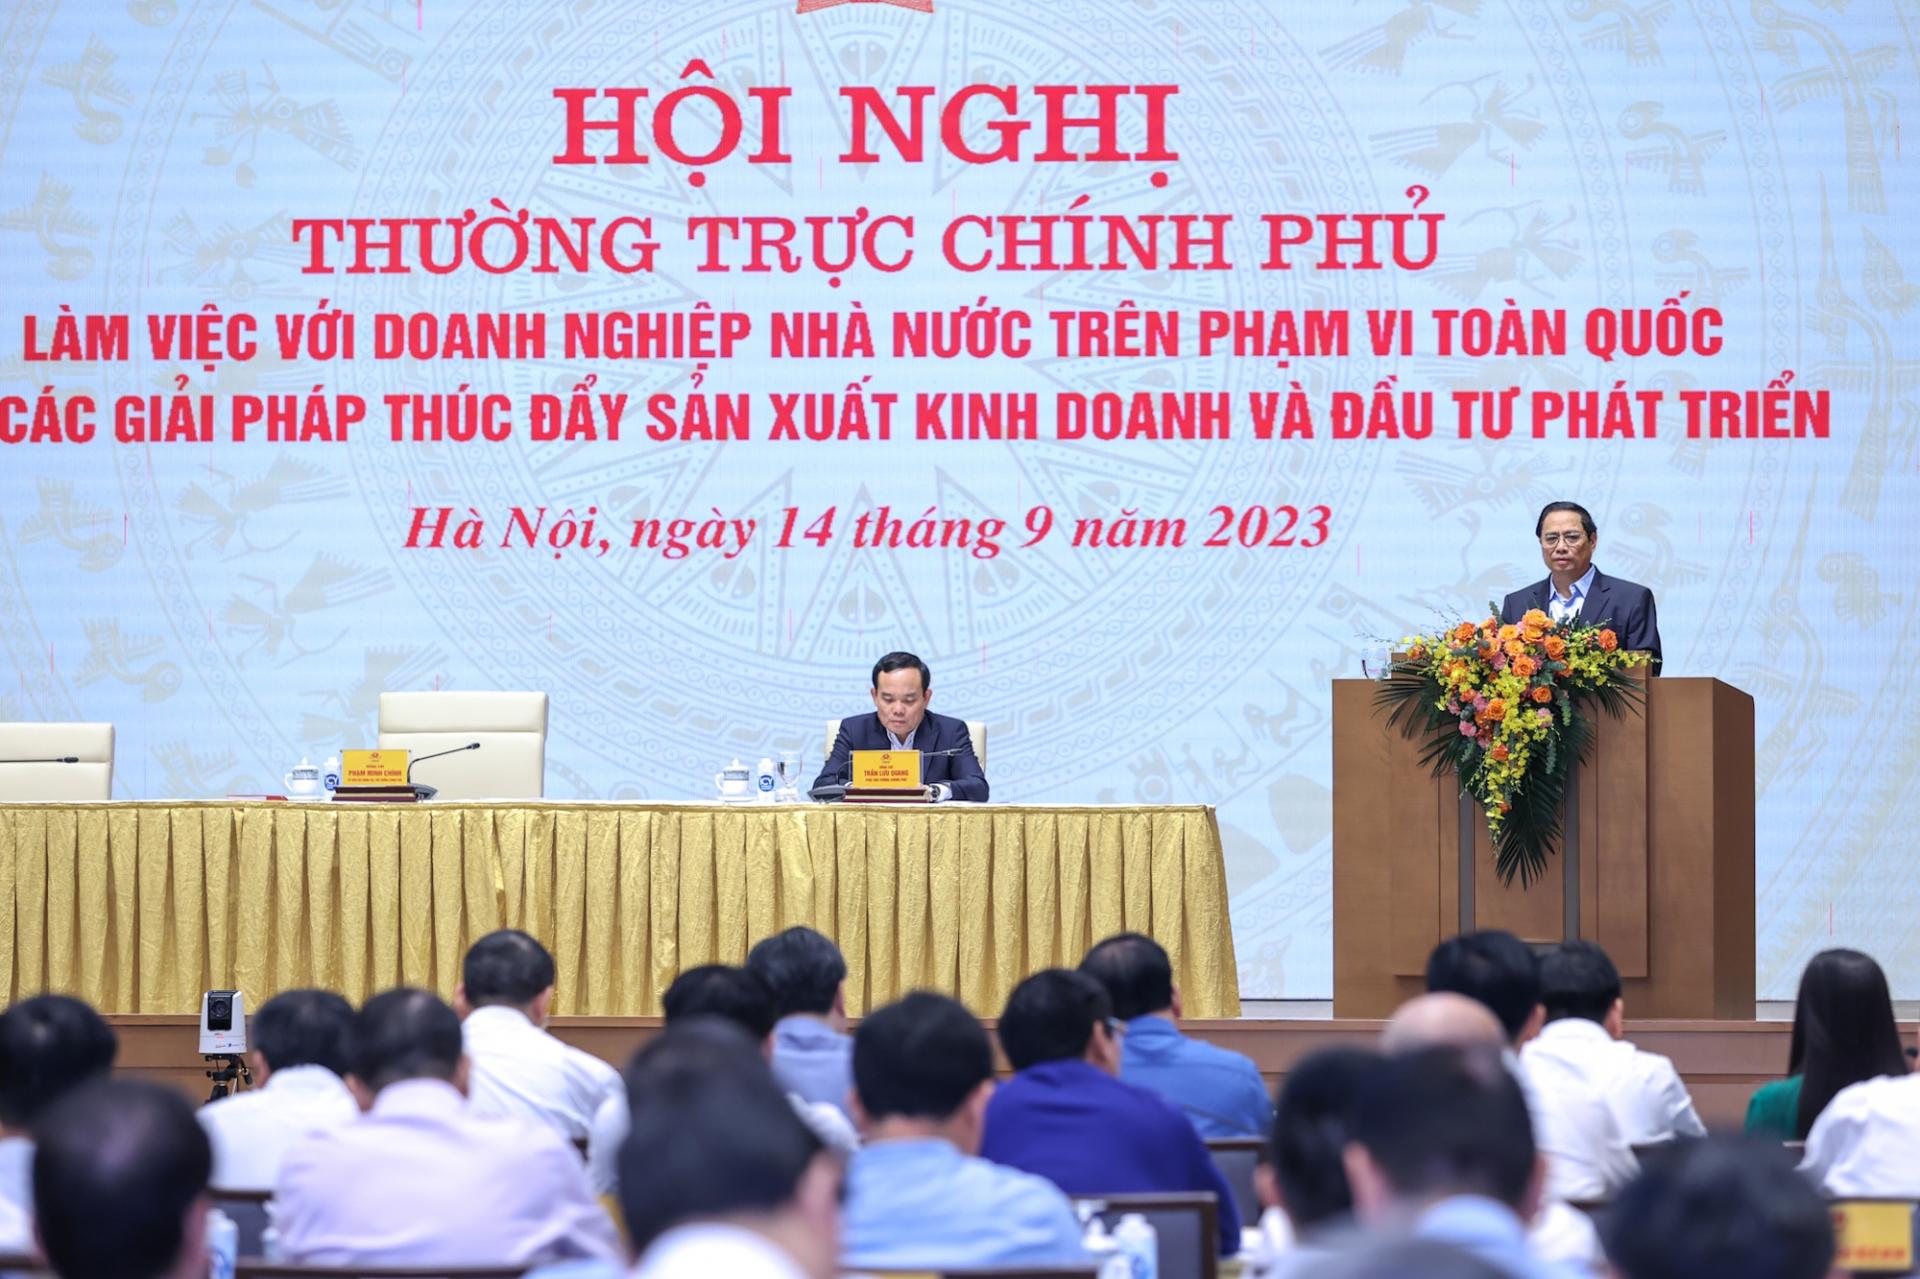 Thủ tướng Phạm Minh Chính chủ trì Hội nghị của Thường trực Chính phủ làm việc với doanh nghiệp Nhà nước về các giải pháp thúc đẩy sản xuất kinh doanh và đầu tư phát triển. Ảnh: VGP